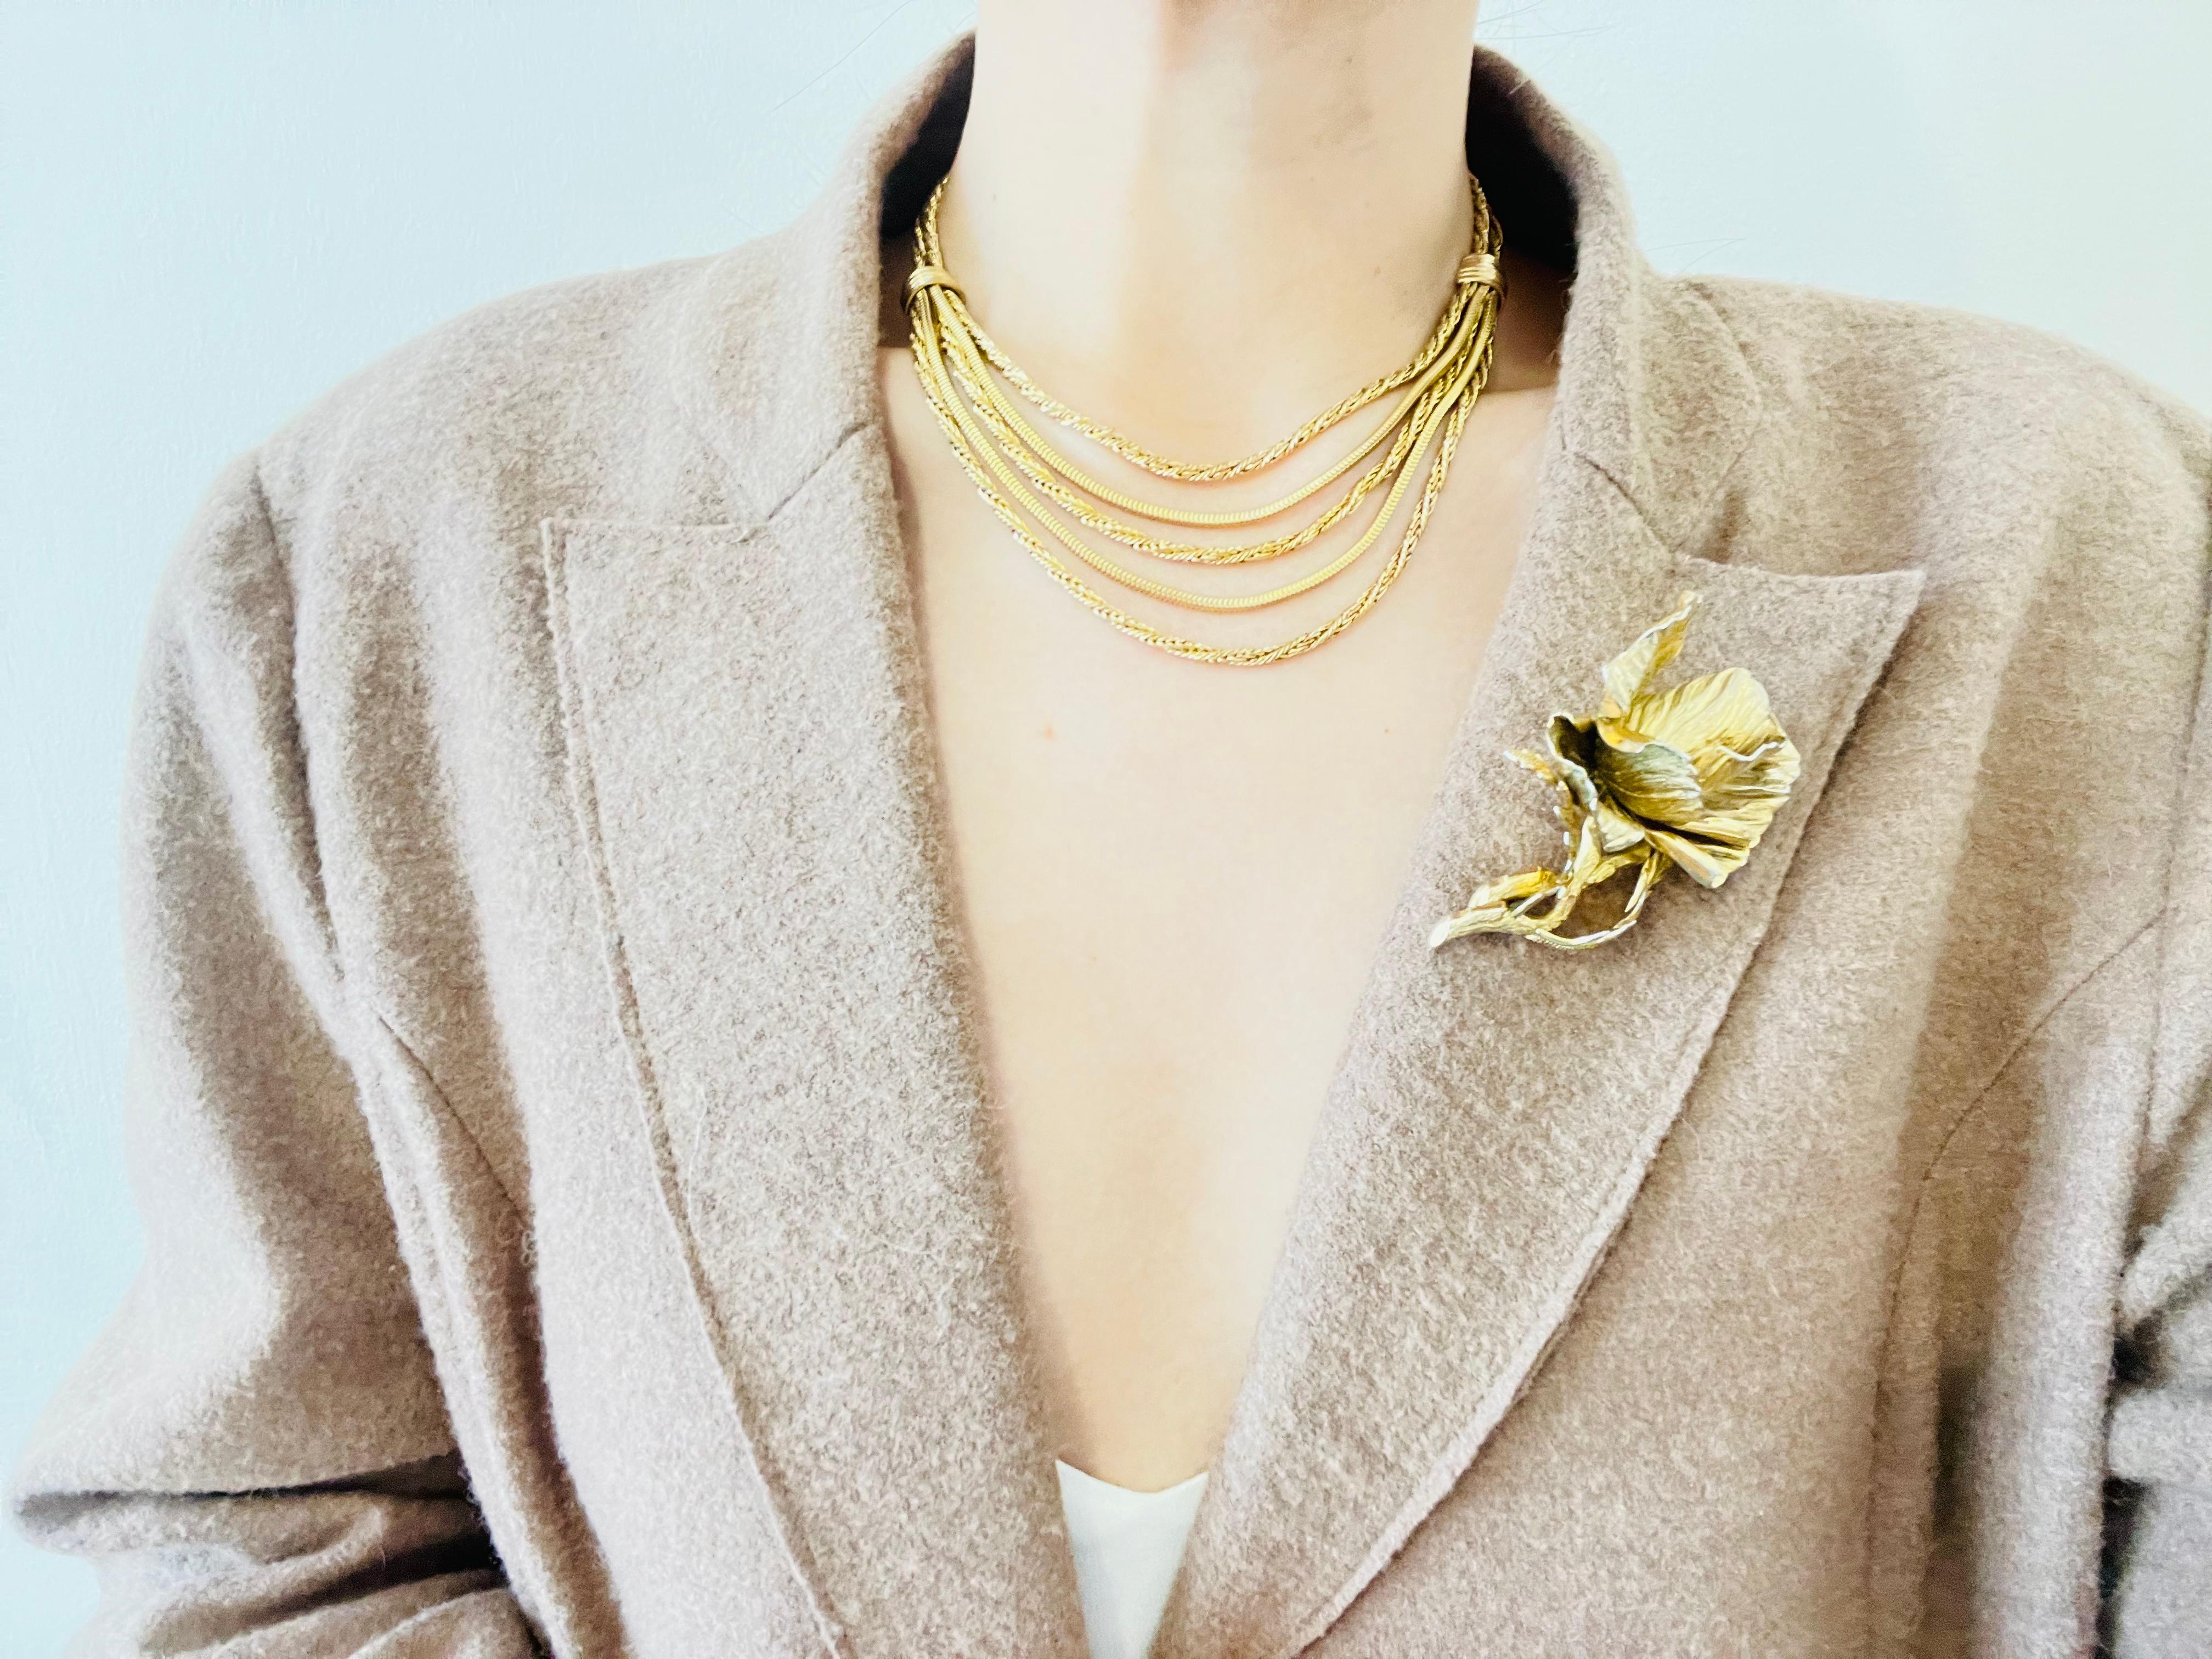 Christian Dior GROSSE 1961 Vintage Double 5 Strand Schicht Seil Schlange Halskette, vergoldet

Sehr guter Zustand. Leichte Kratzer oder Farbverluste, kaum wahrnehmbar. 

Signiert Grosse 1961. 100% echt. Selten zu finden.

Größe:  42 cm. Kette